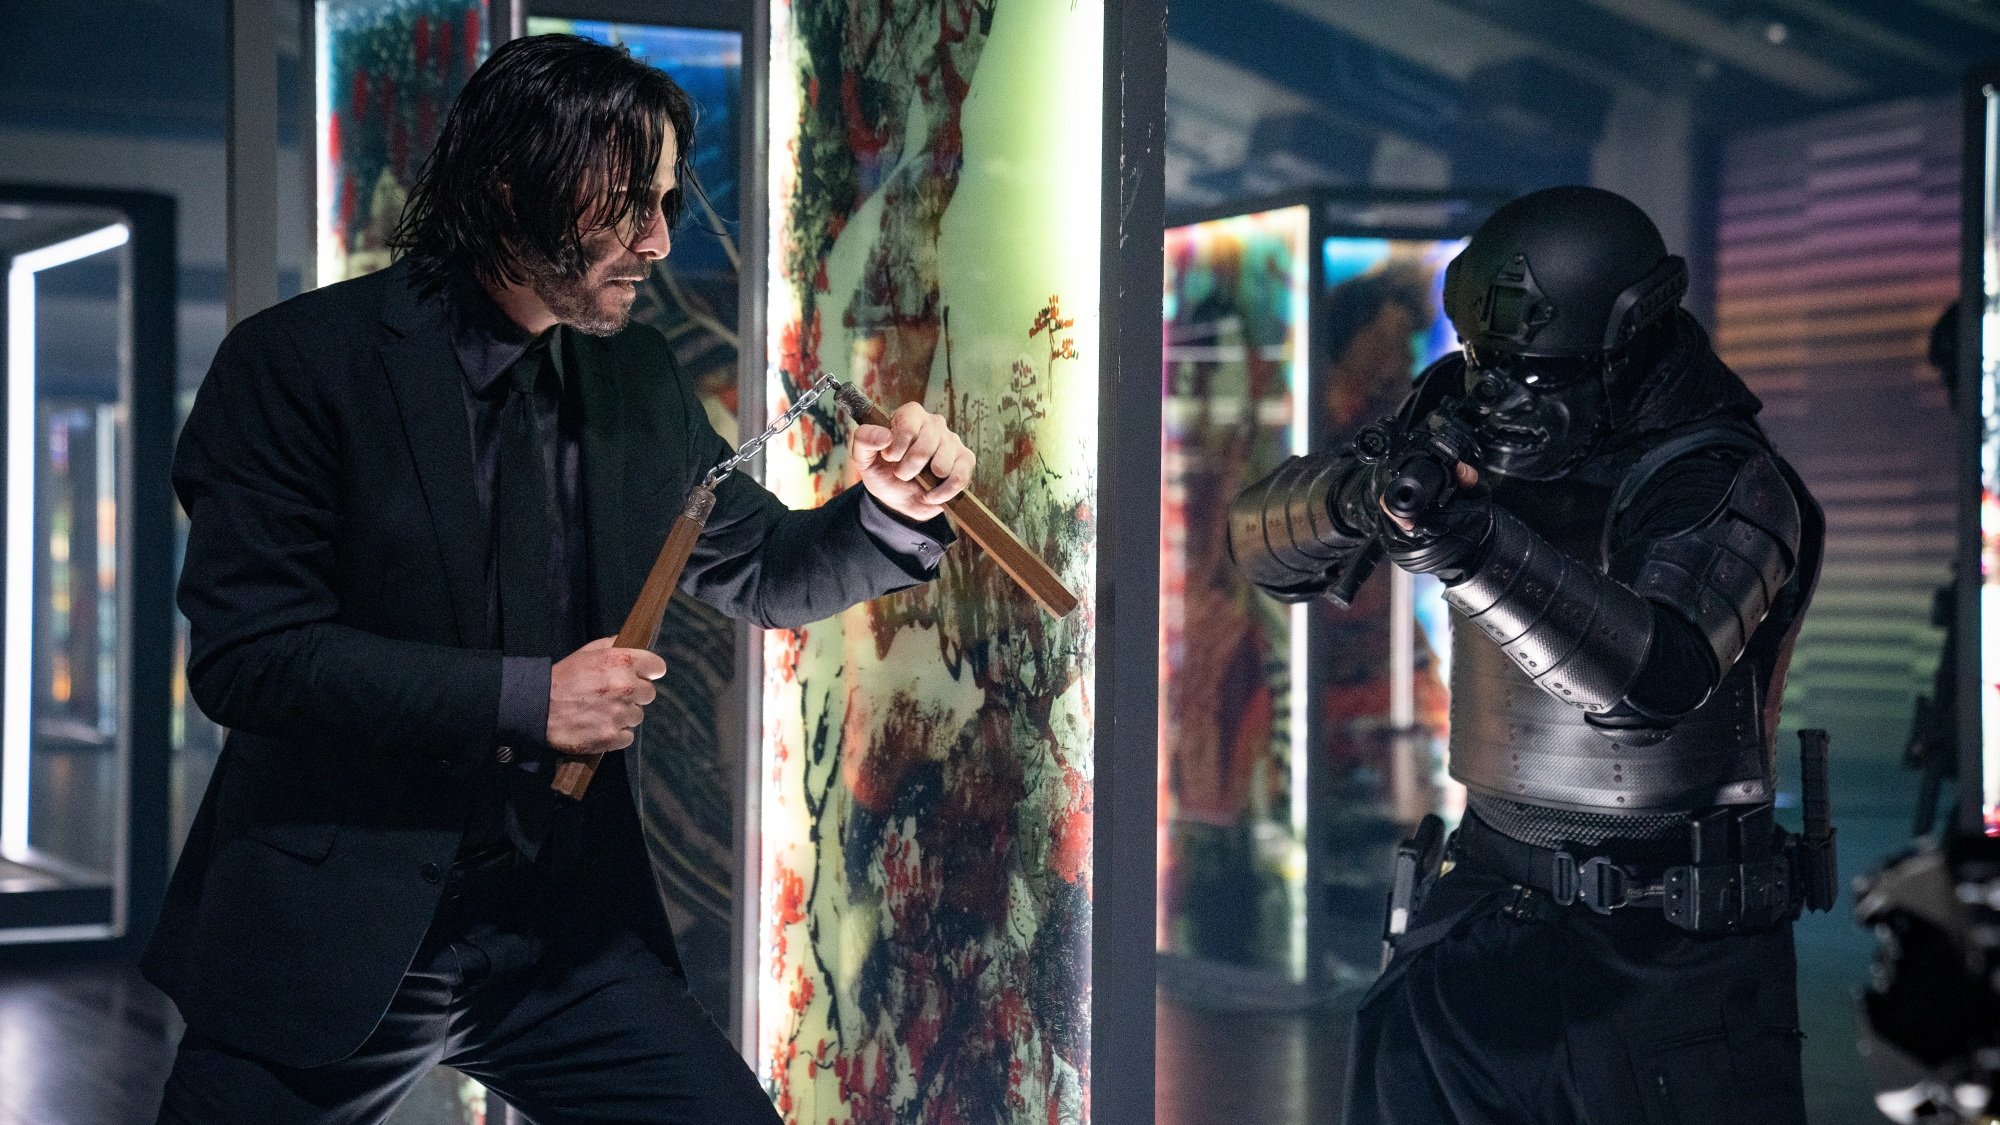 Un homme en costume noir brandit des nunchuks contre un homme armé portant une armure tactique noire.